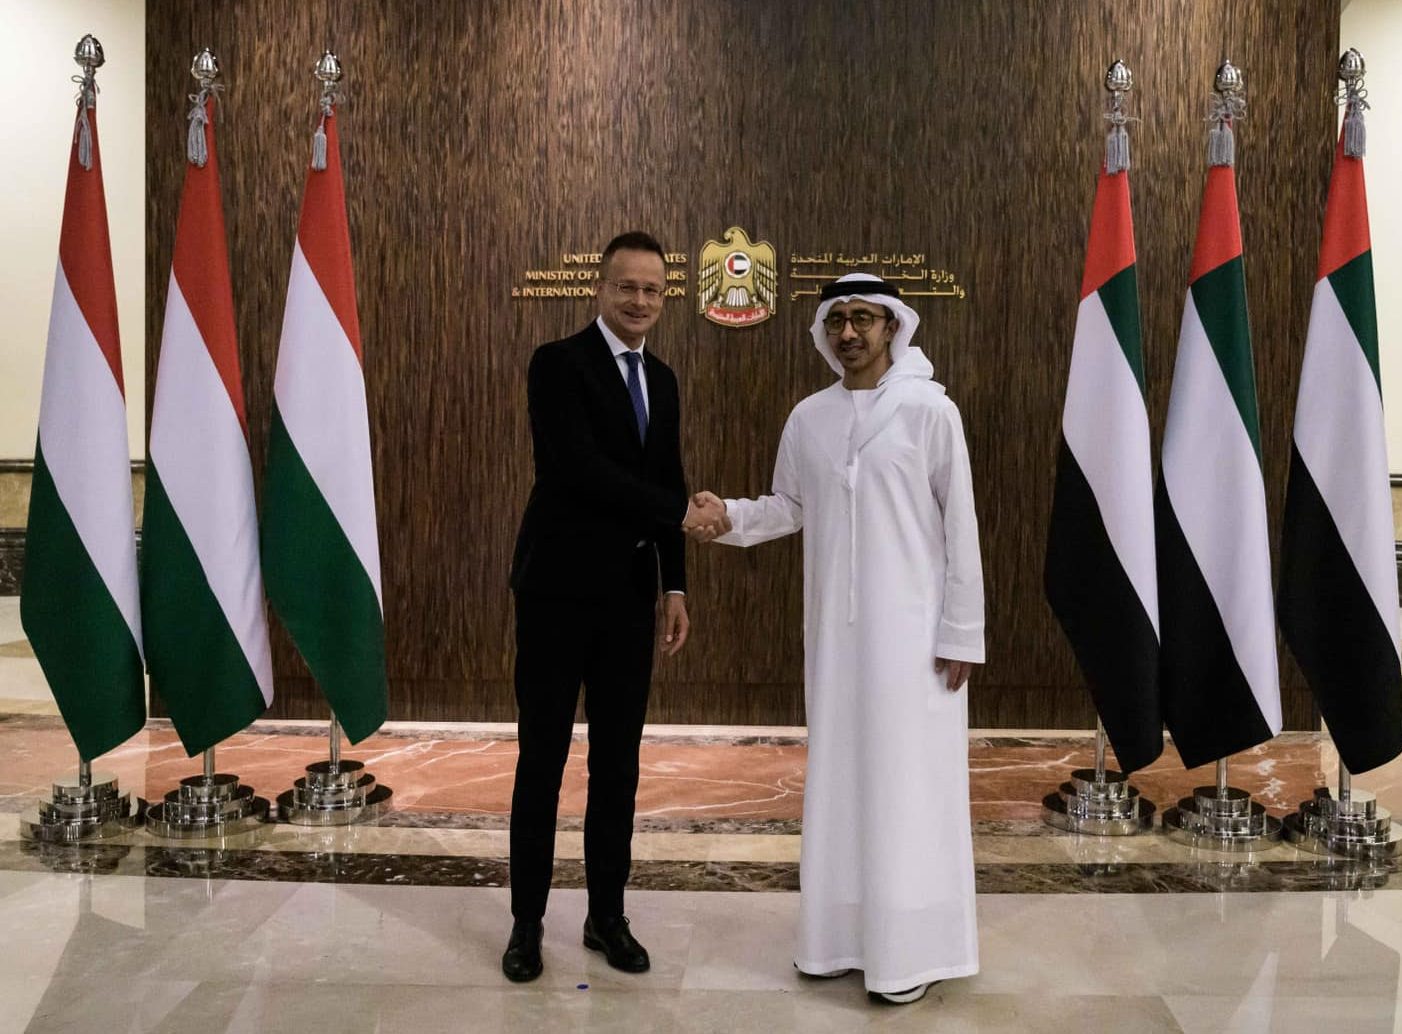 Foreign Minister Szijjártó in UAE for Energy Talks